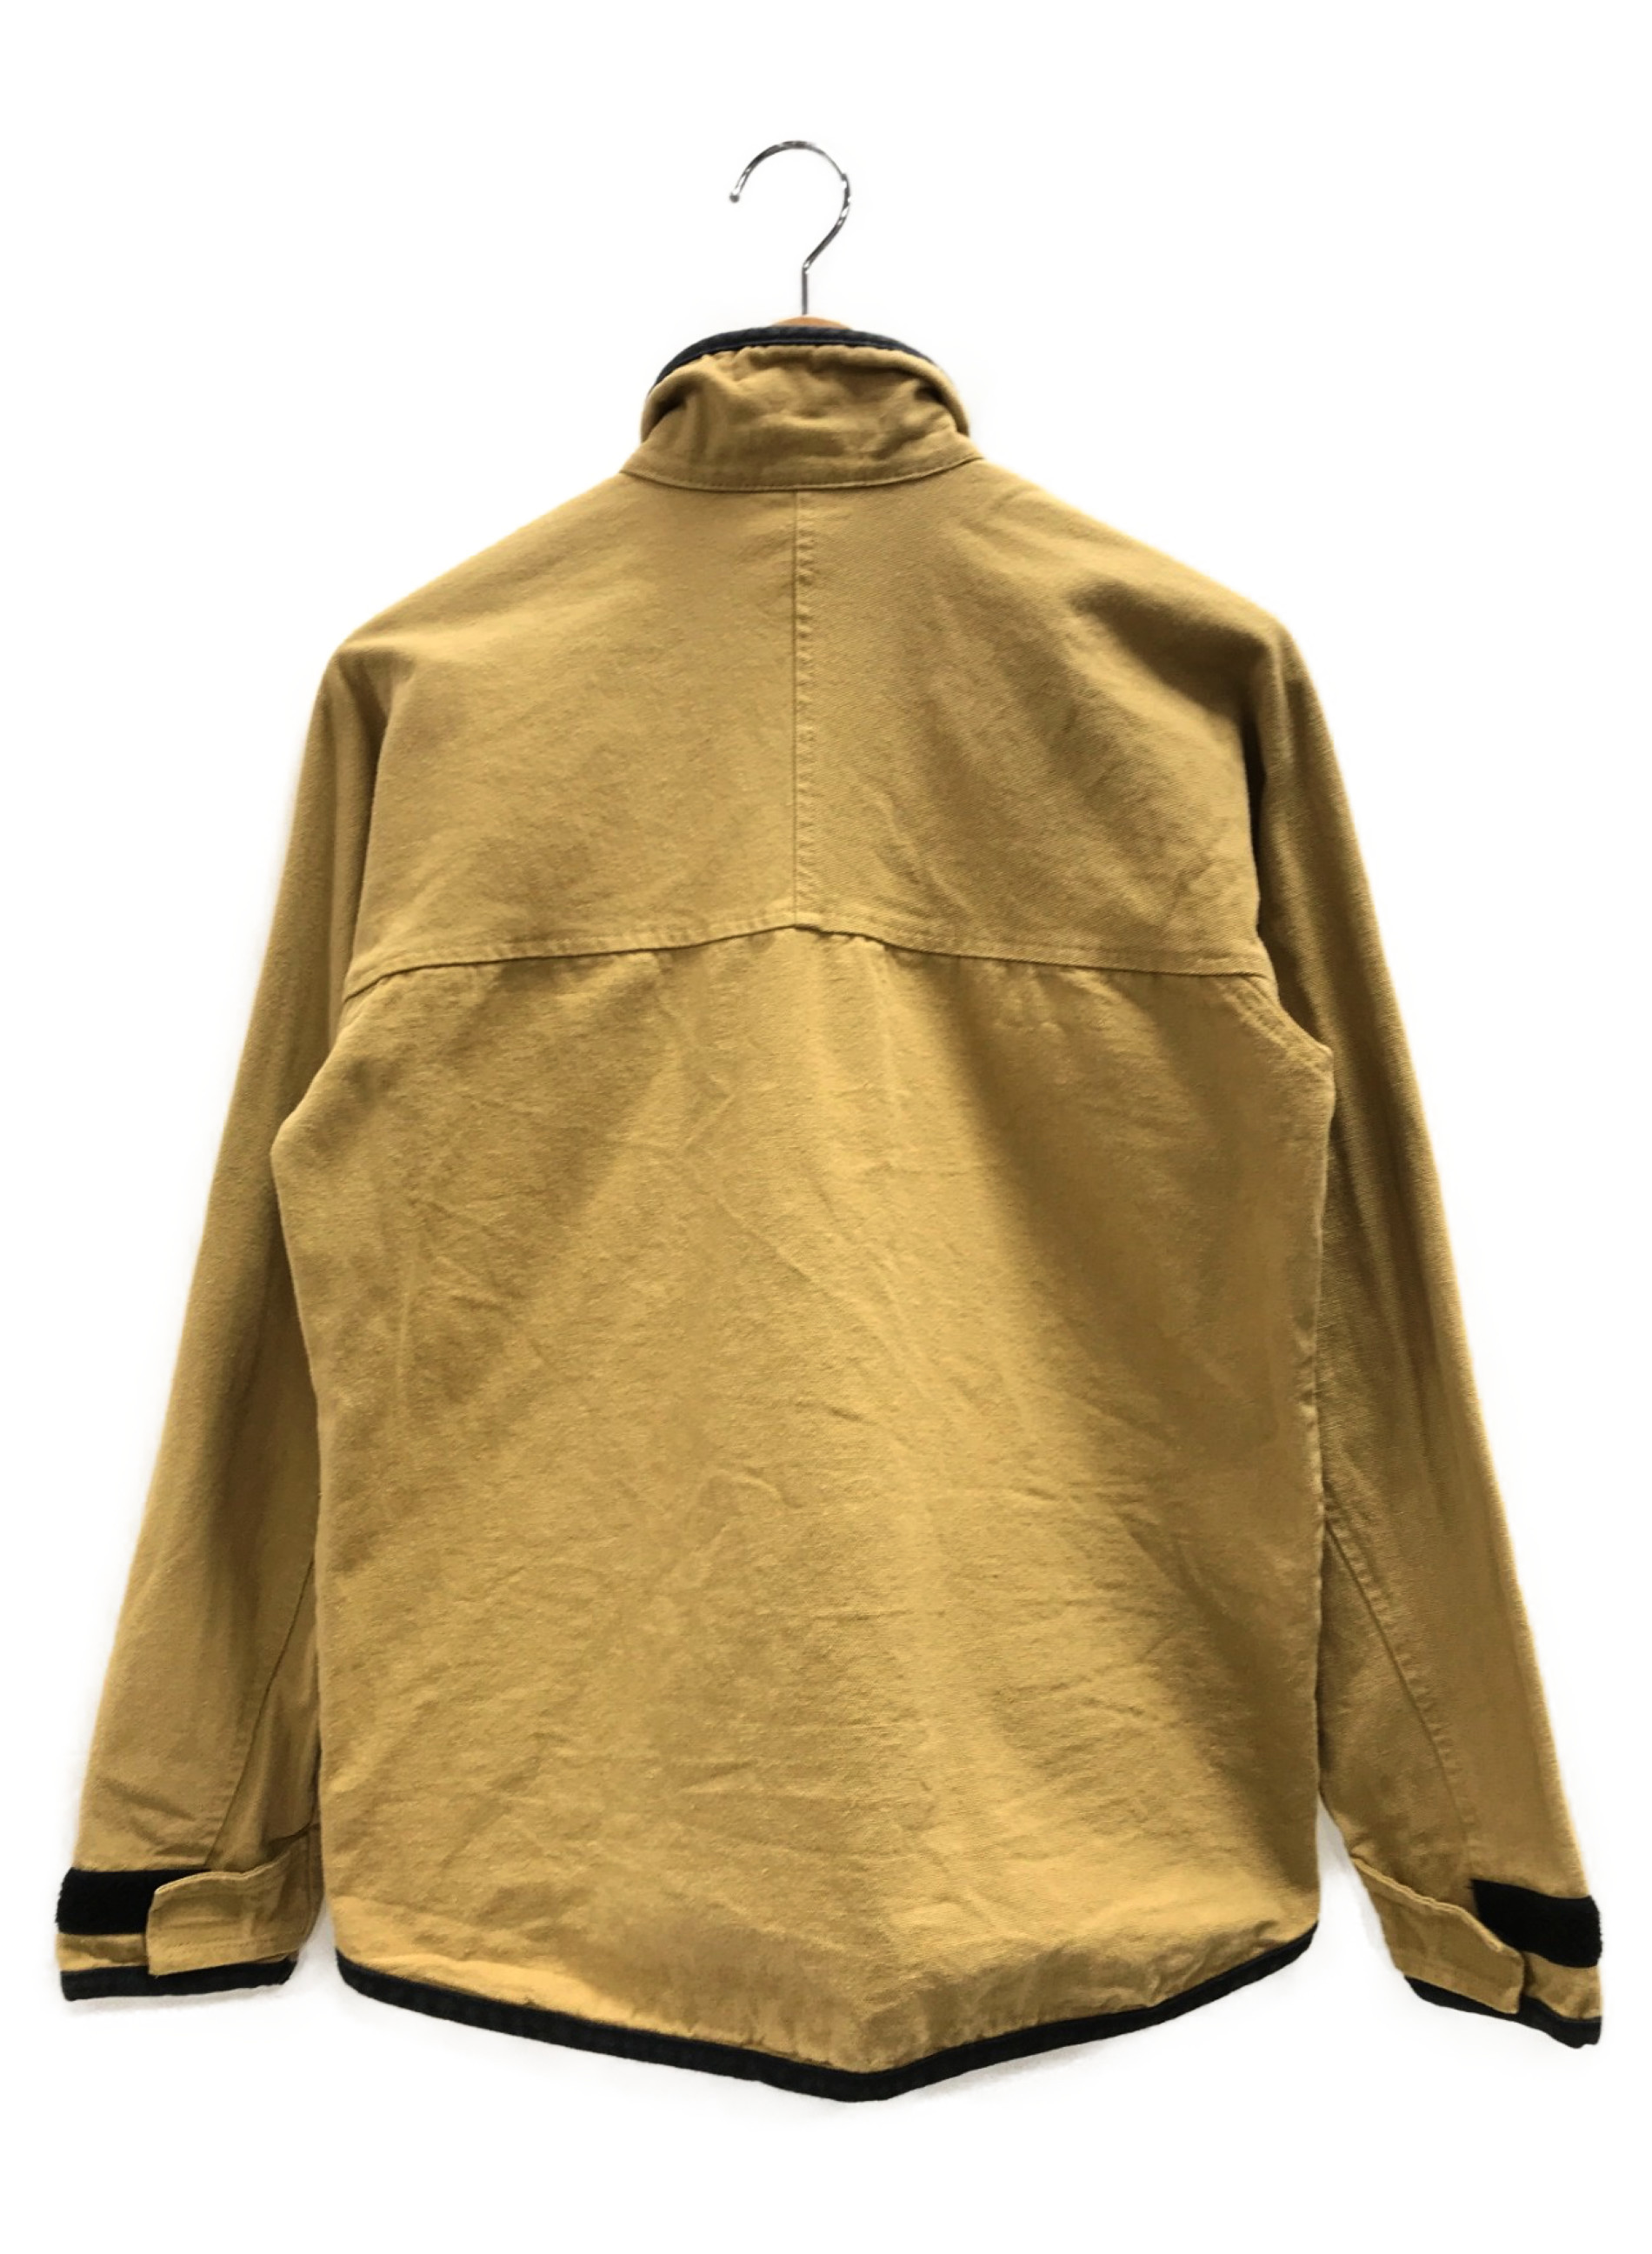 KAVU (カブー) フルジップスローシャツ ベージュ サイズ:S